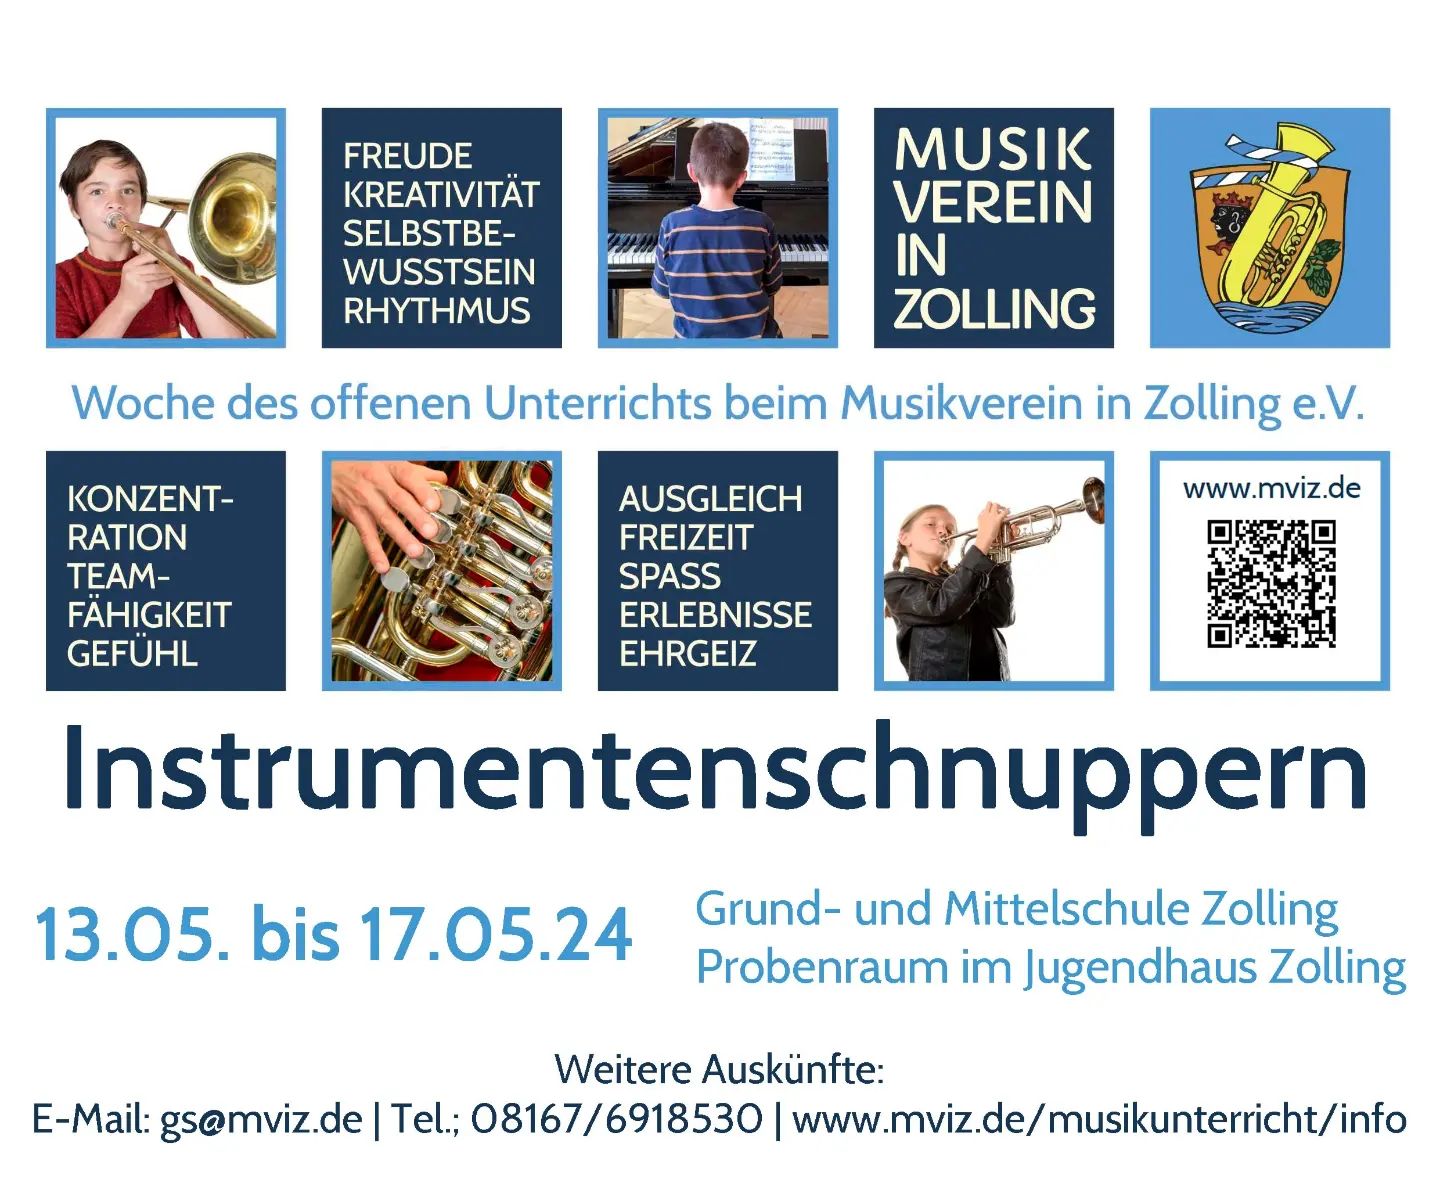 Woche des offenen Unterrichts vom 13.05. bis 17.05.2024

Für alle Interessierten die ein Musikinstrument erlernen möchten, gibt es dieses Jahr wieder Möglichkeit die Instrumente kennen zu lernen, die ...